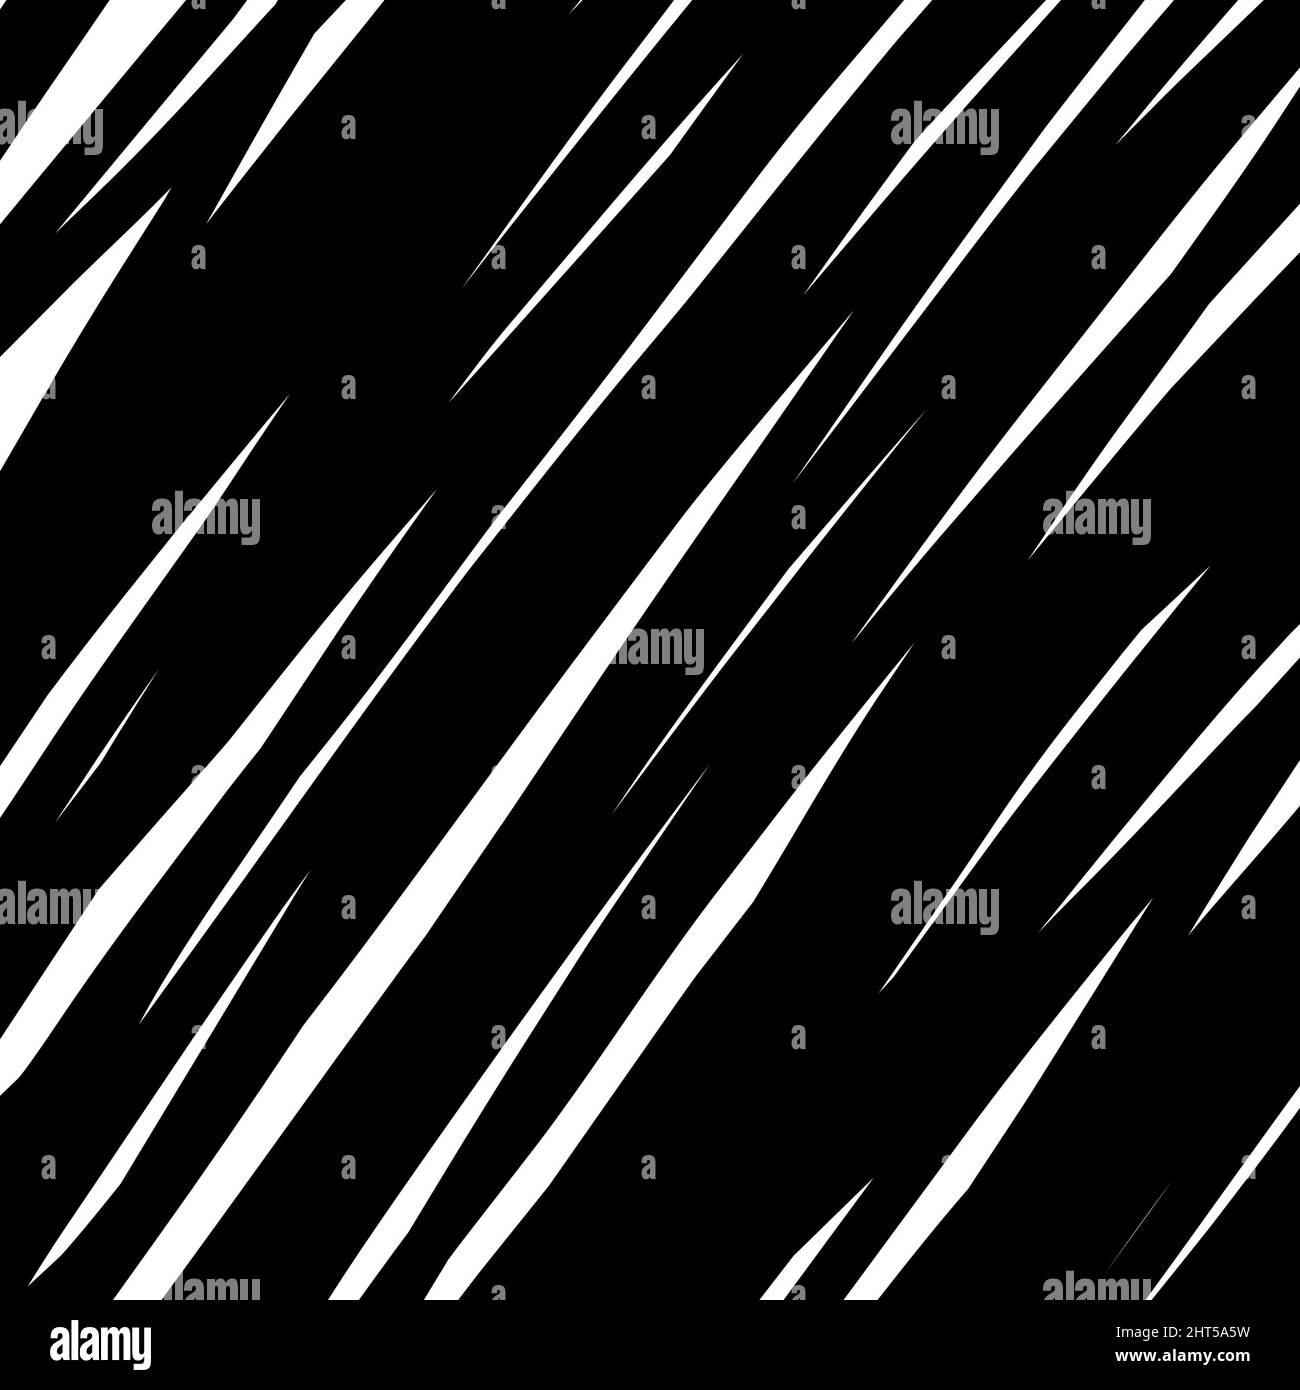 Illustration du motif zébré noir et blanc - cool pour l'arrière-plan de concept animal Banque D'Images